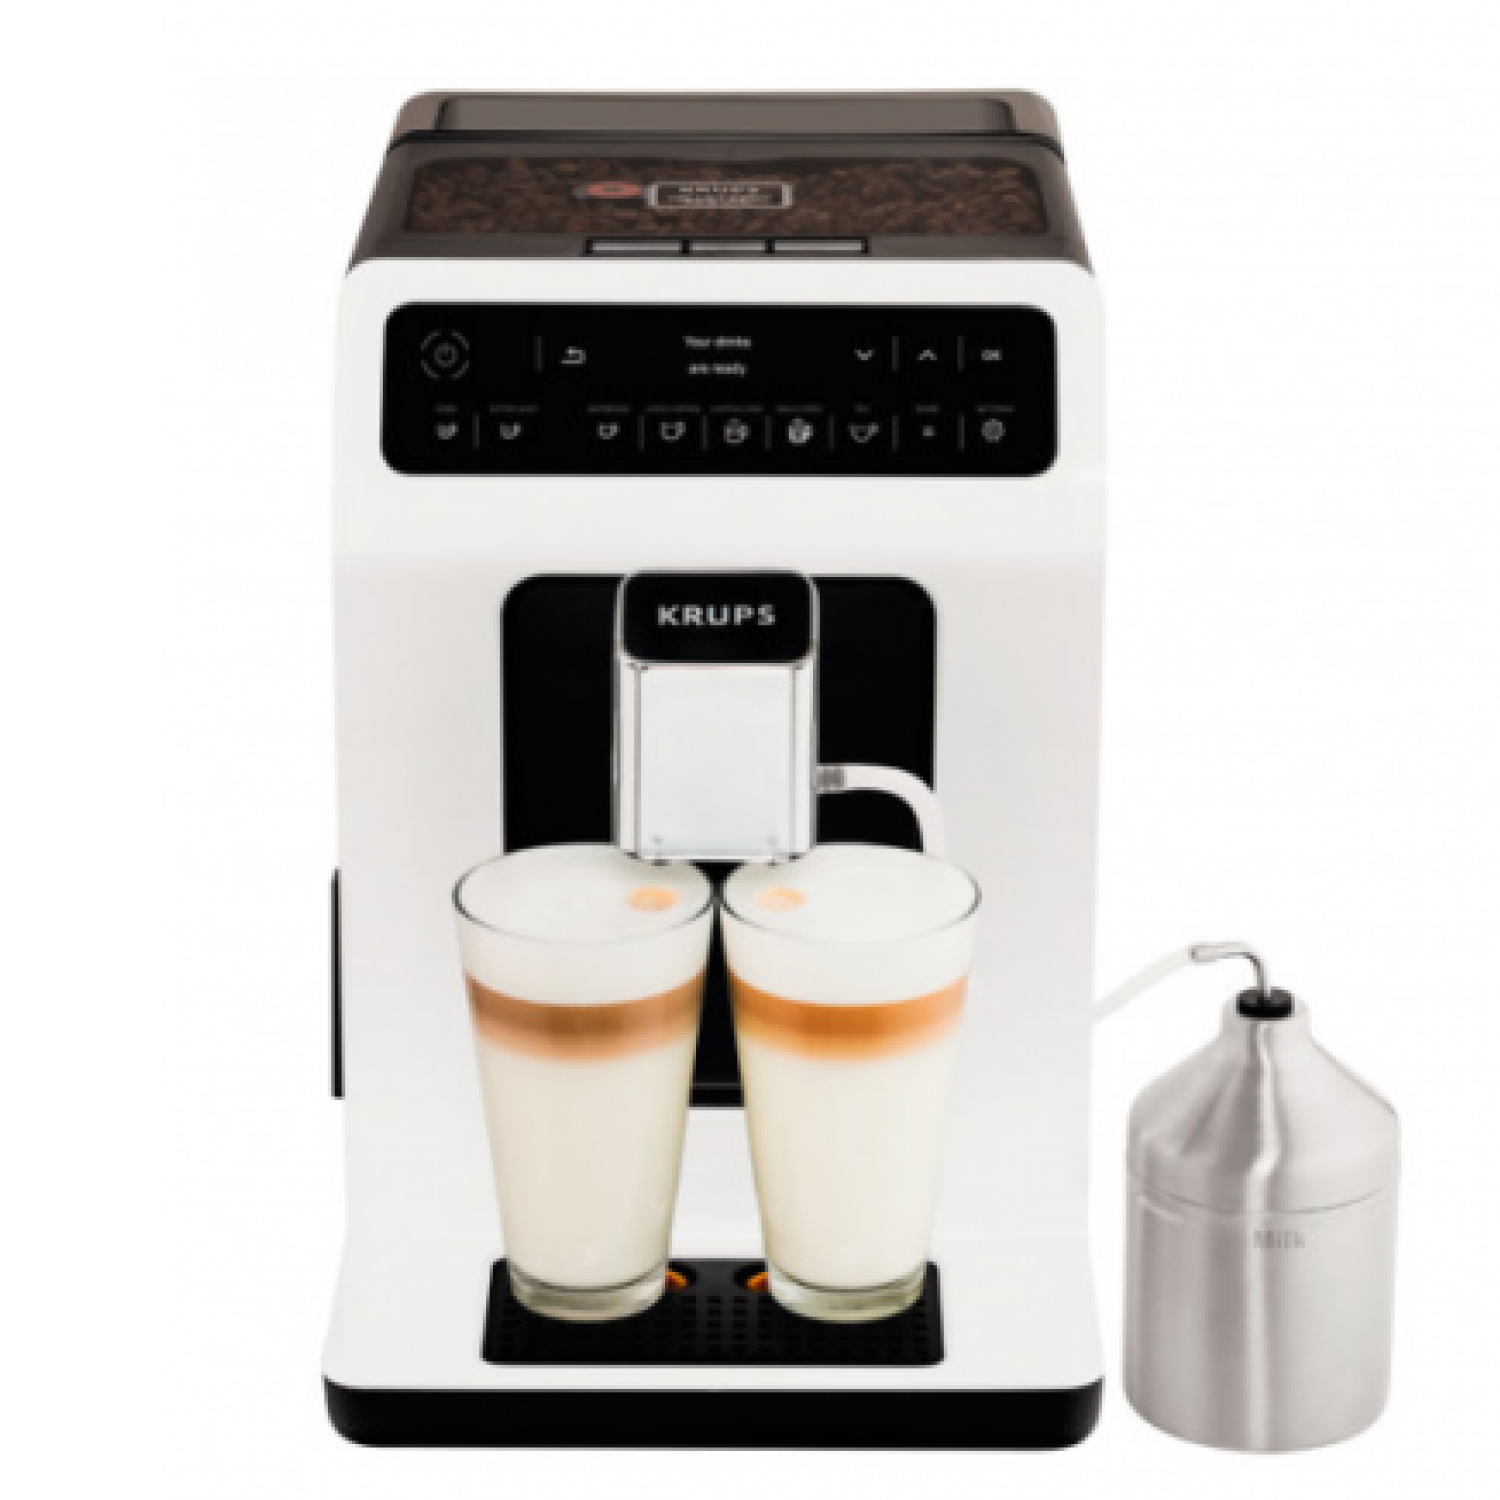 Автоматическая кофемашина Krups EVIDENCE EA891110, цвет белый